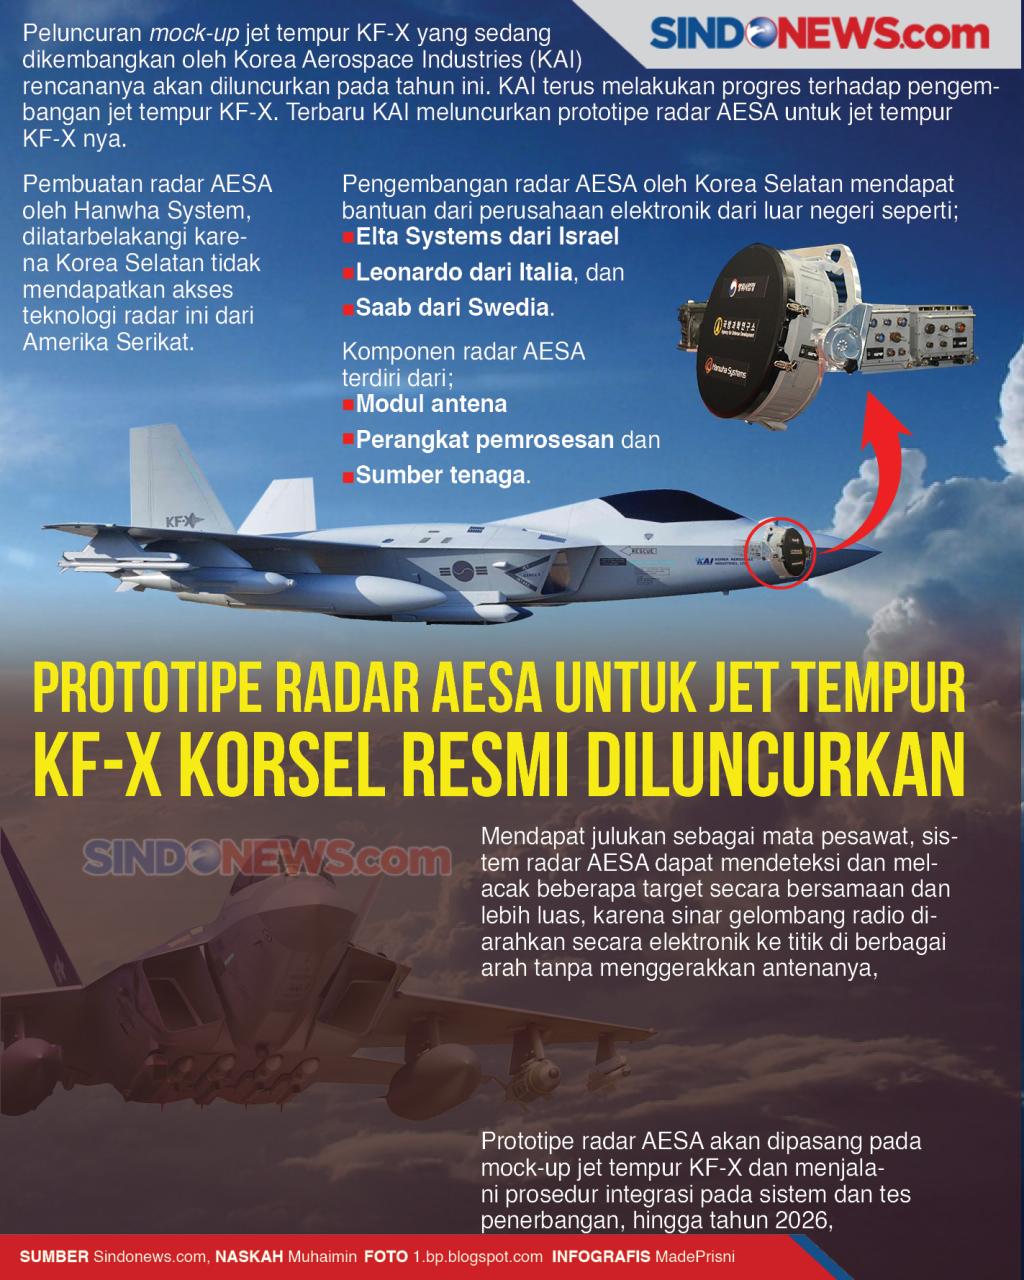 pesawat jet kf-21 buatan ri-korsel sematkan teknologi penghapus radar